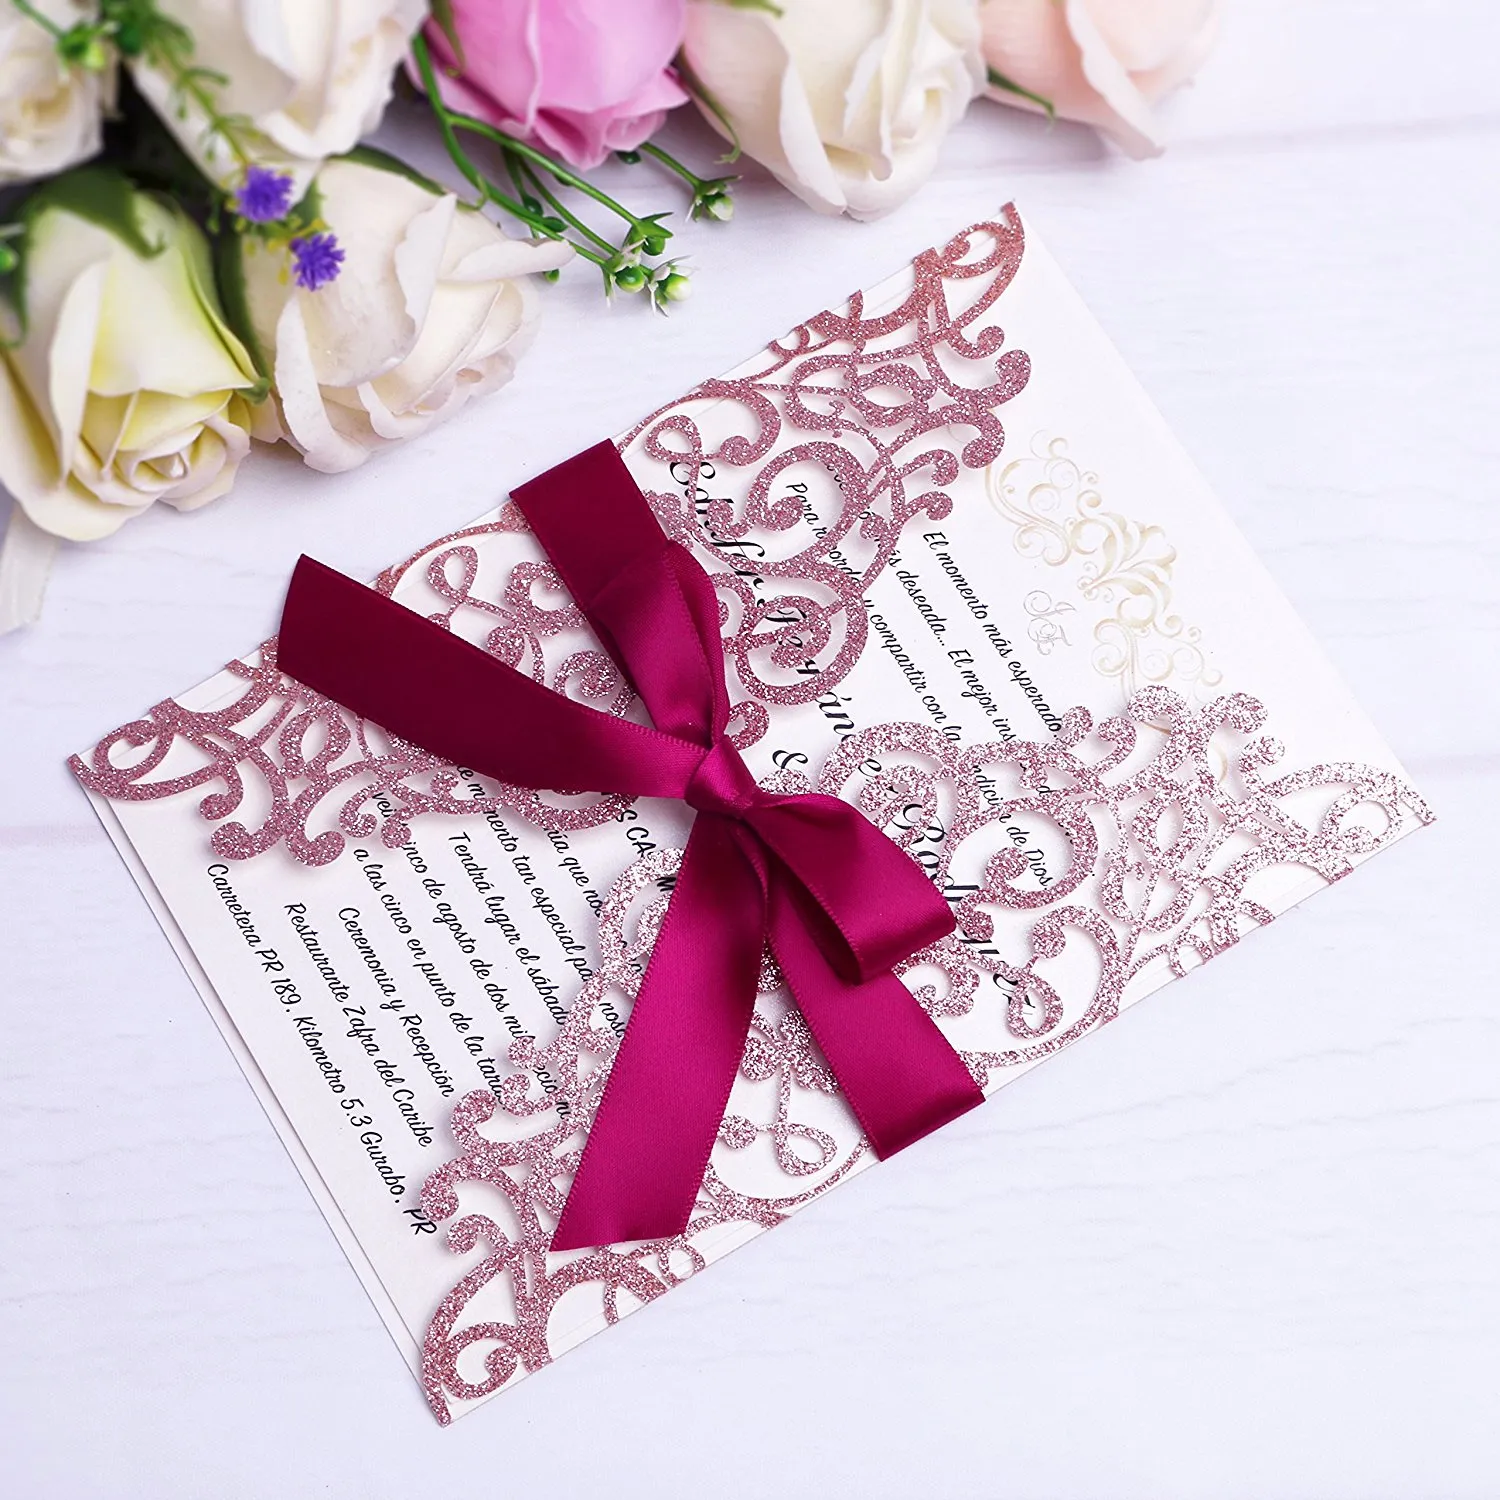 Elegant rose goud glitter laser gesneden uitnodigingen kaarten met linten voor bruiloft bruids douche verloving verjaardag verjaardag afstuderen bedrijfsuitnodigingen